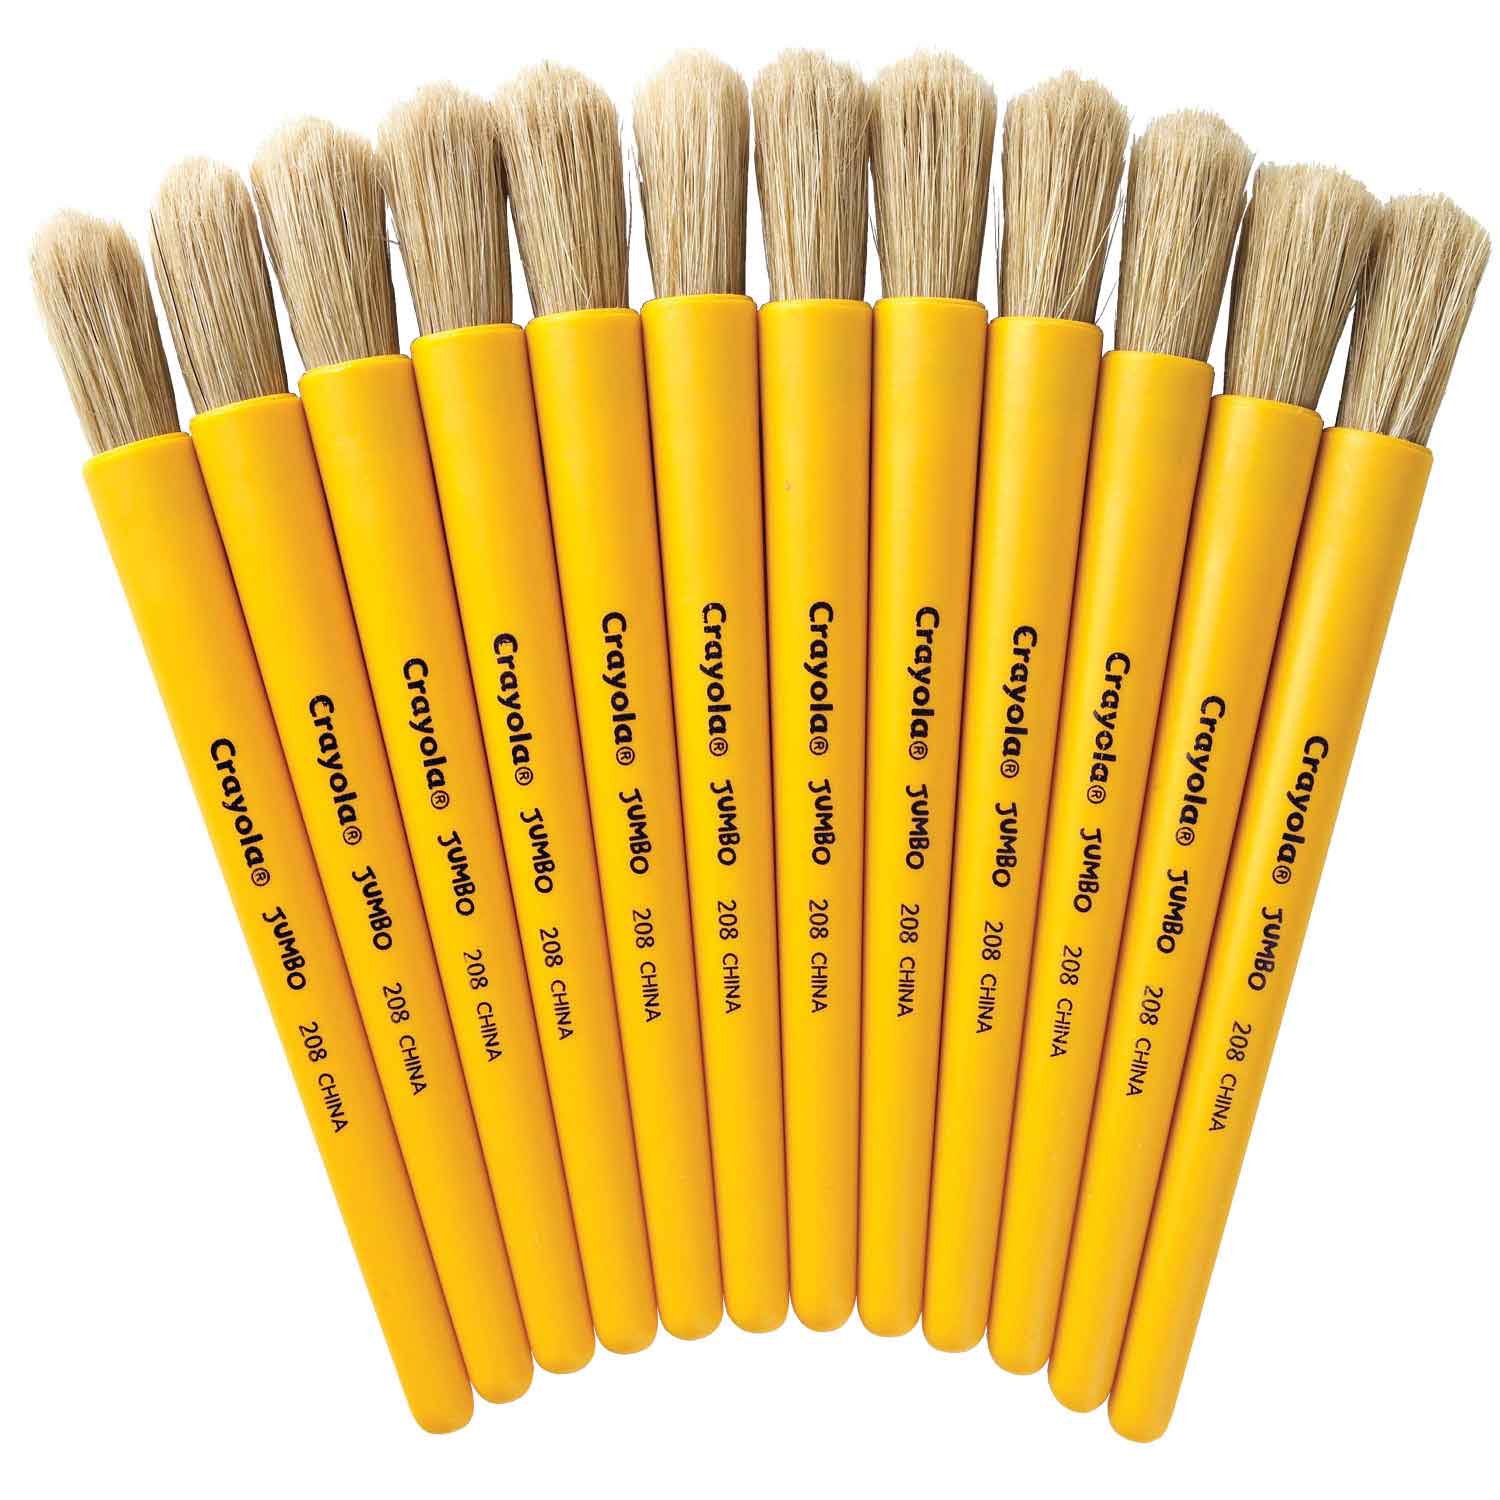 Crayola Jumbo Watercolors and Brush - 00517